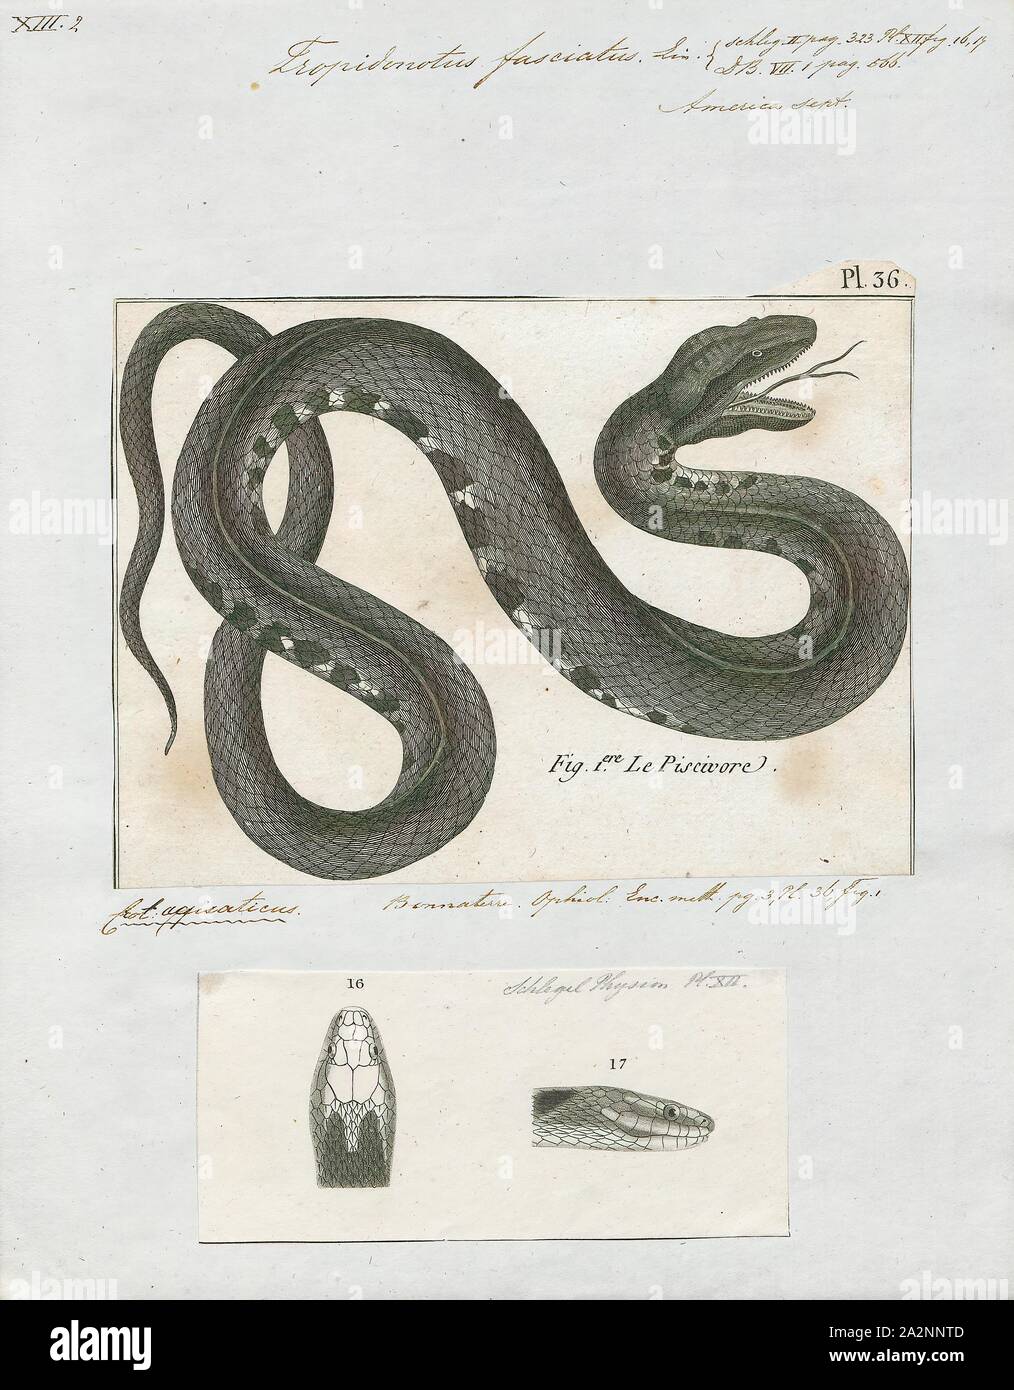 Tropidonotus fasciatus, stampa le fasce di serpente di acqua o acqua meridionale snake (Nerodia fasciata) è una specie di gran parte acquatica, nonvenomous, colubrid snake endemico della centrale e sud-est degli Stati Uniti., 1700-1880 Foto Stock